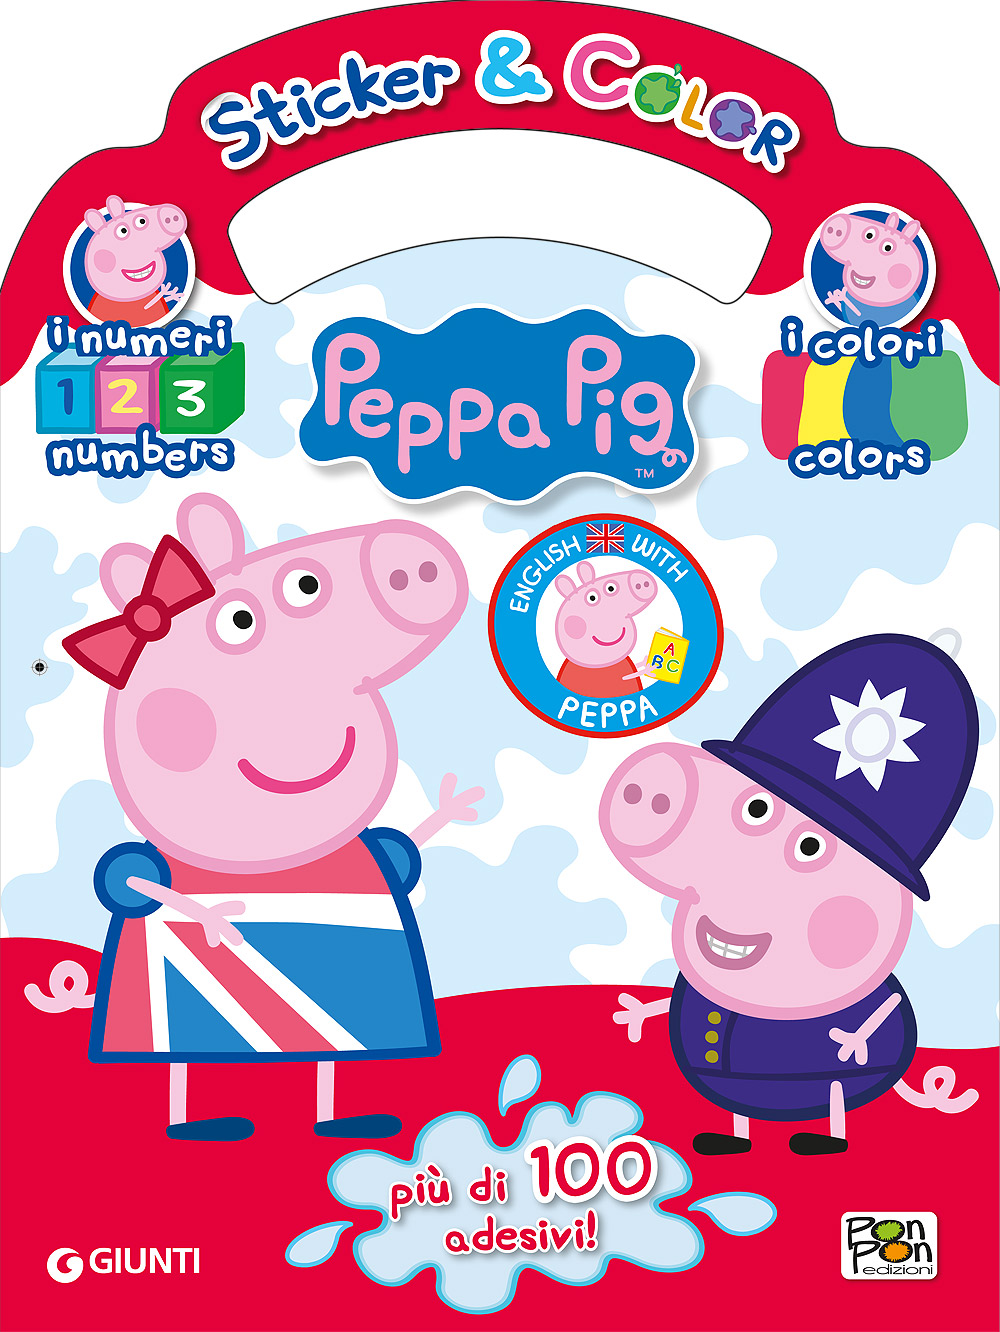 Sticker & Color Impara l'inglese con Peppa Pig - I numeri I colori